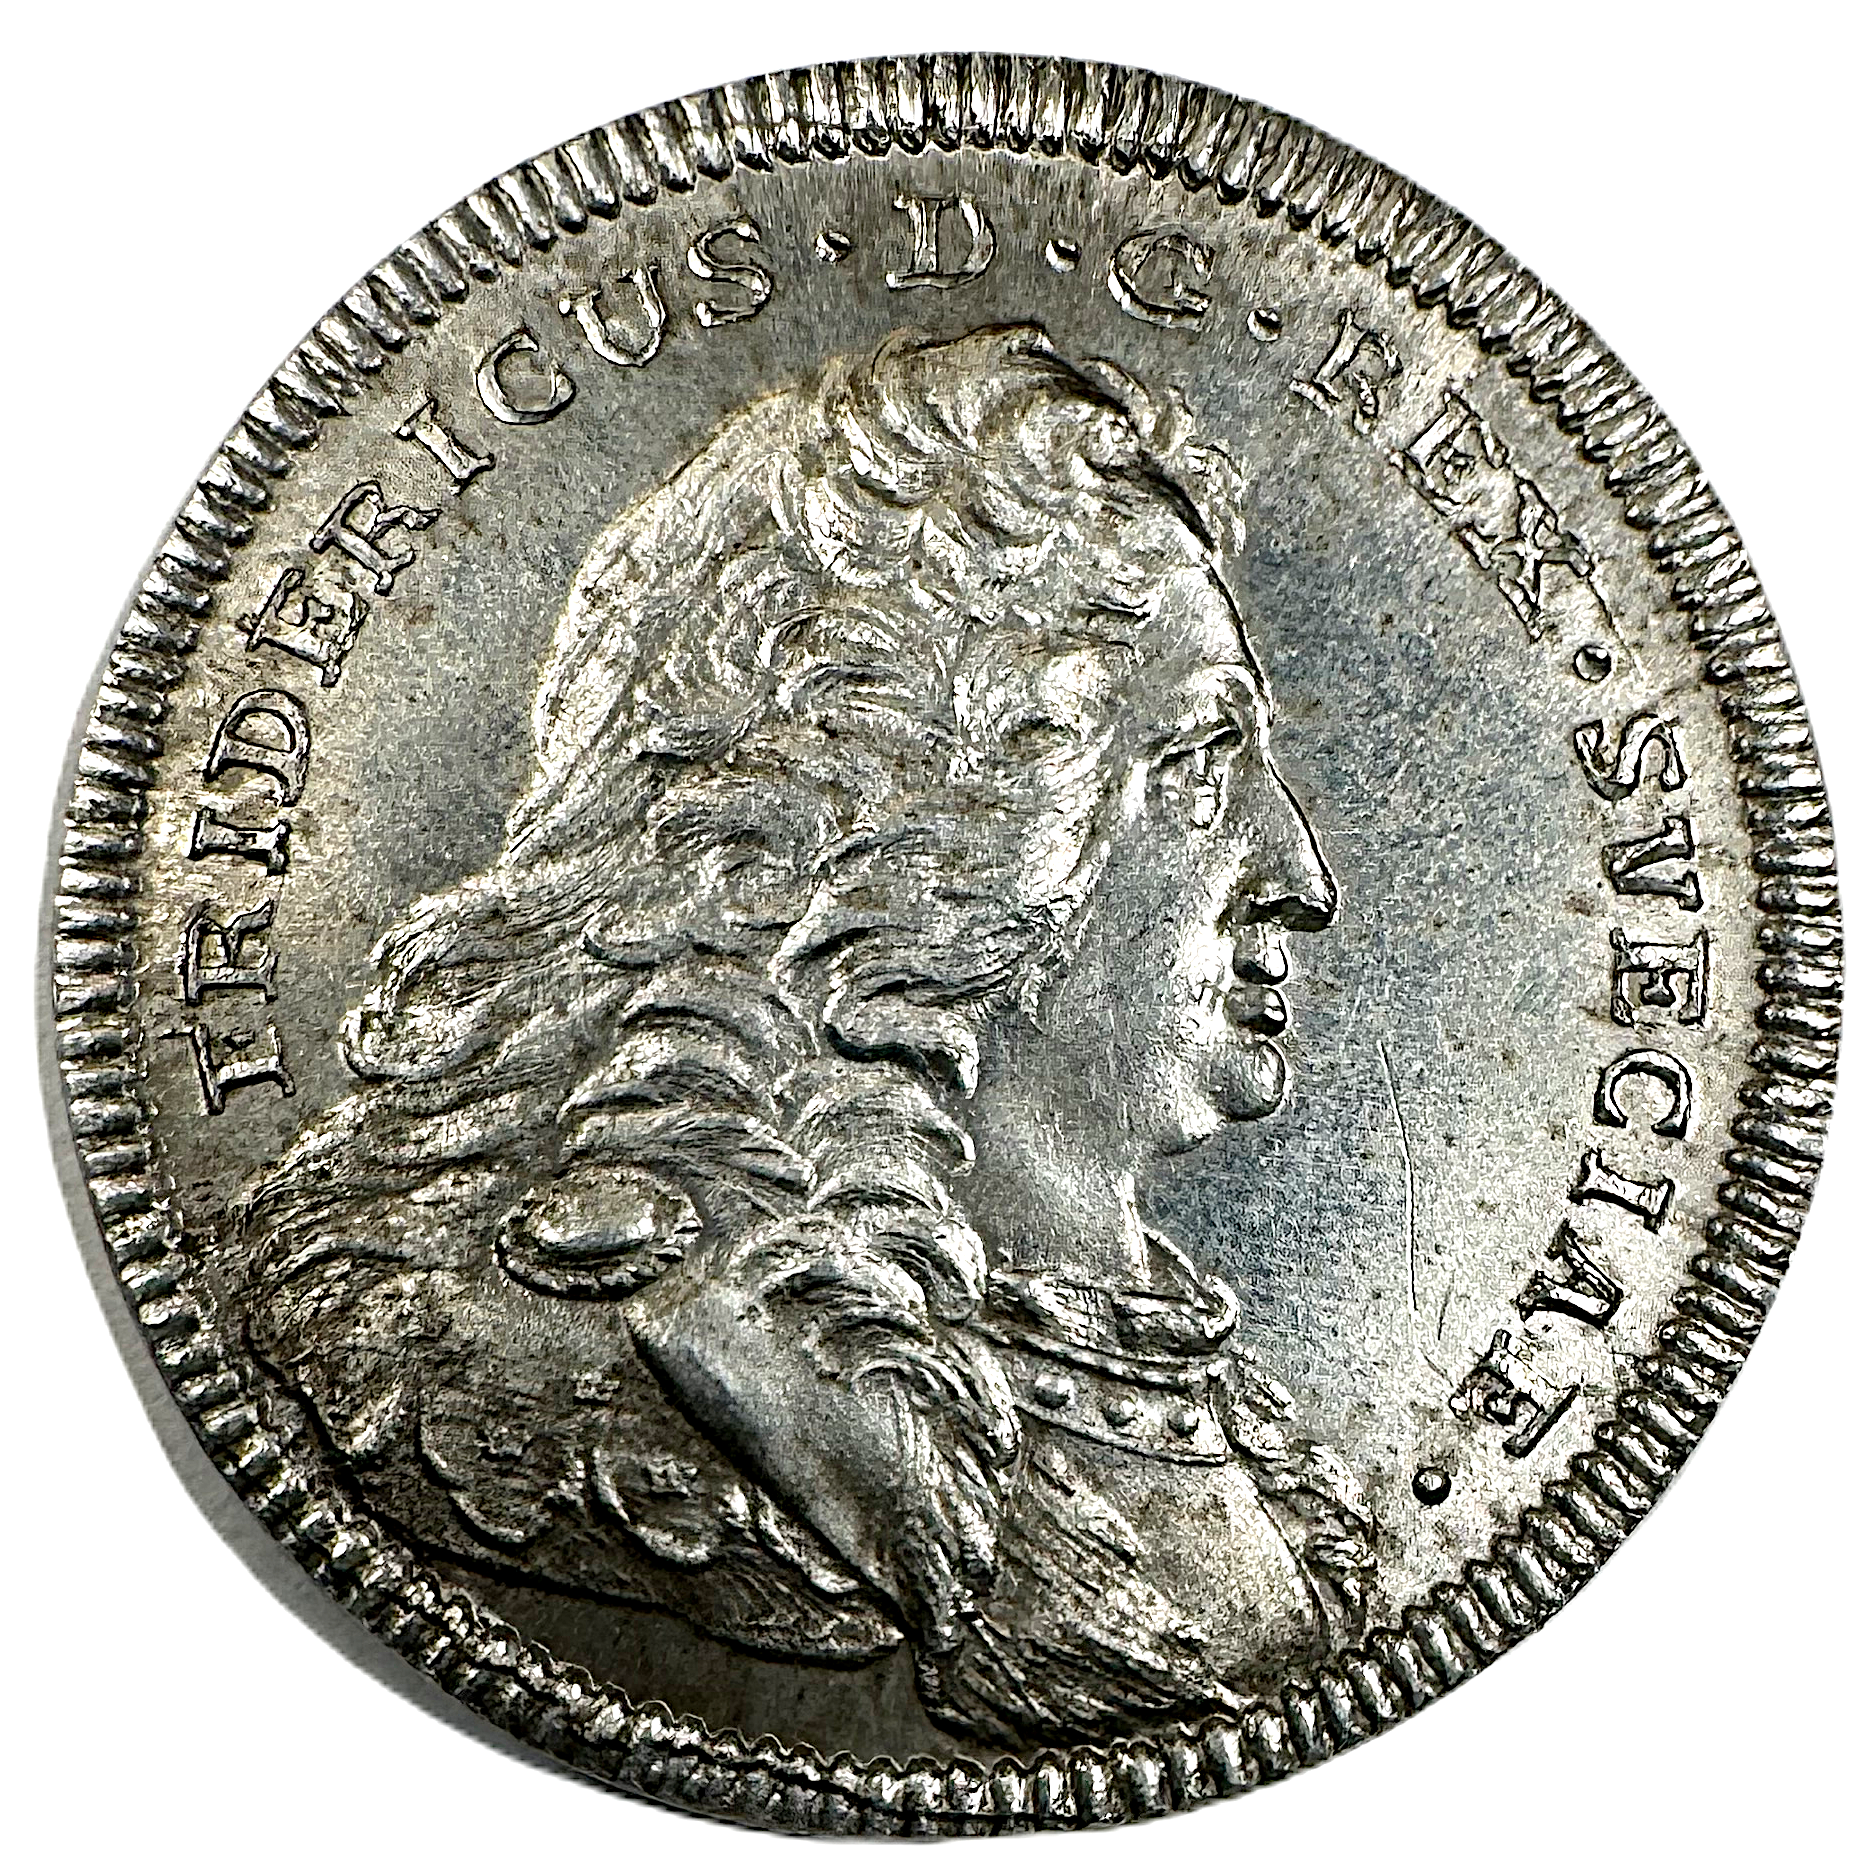 Fredrik I:s minne - Konungens död 1751 av Daniel Fehrman - Åtsida av dukatstamp RR